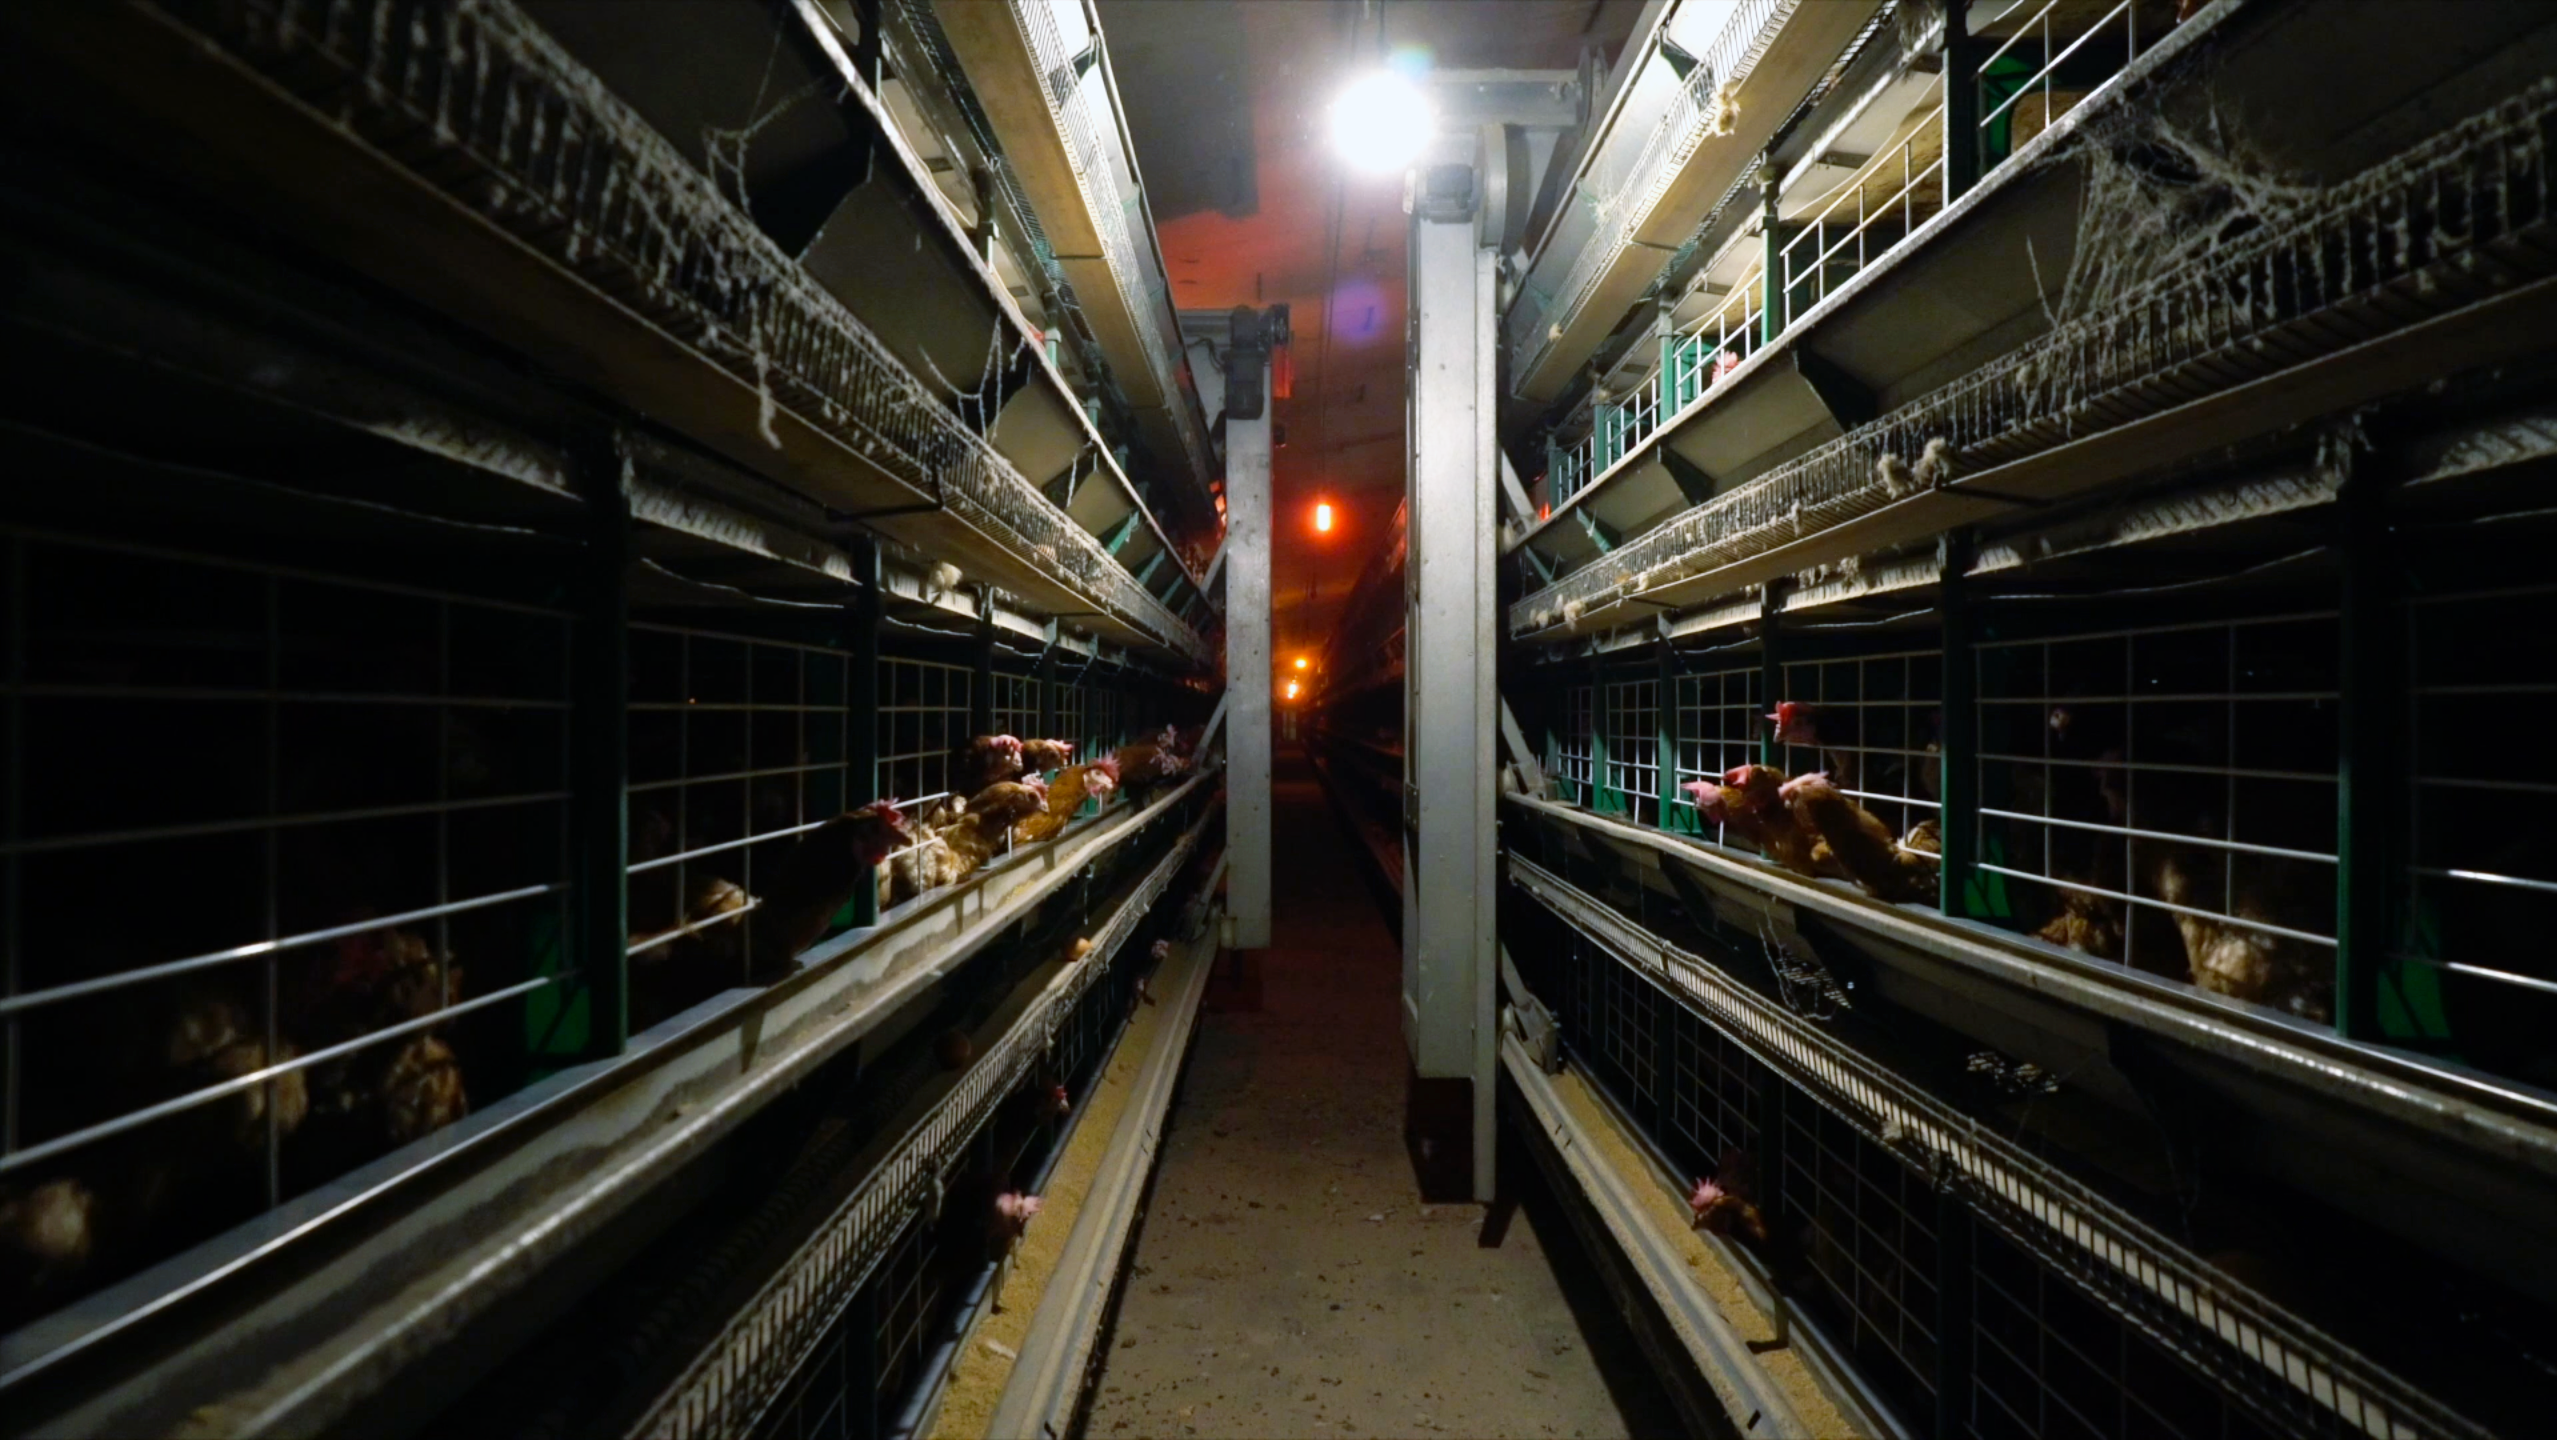 Denuncian el horror en una granja de gallinas enjauladas / Equalia  